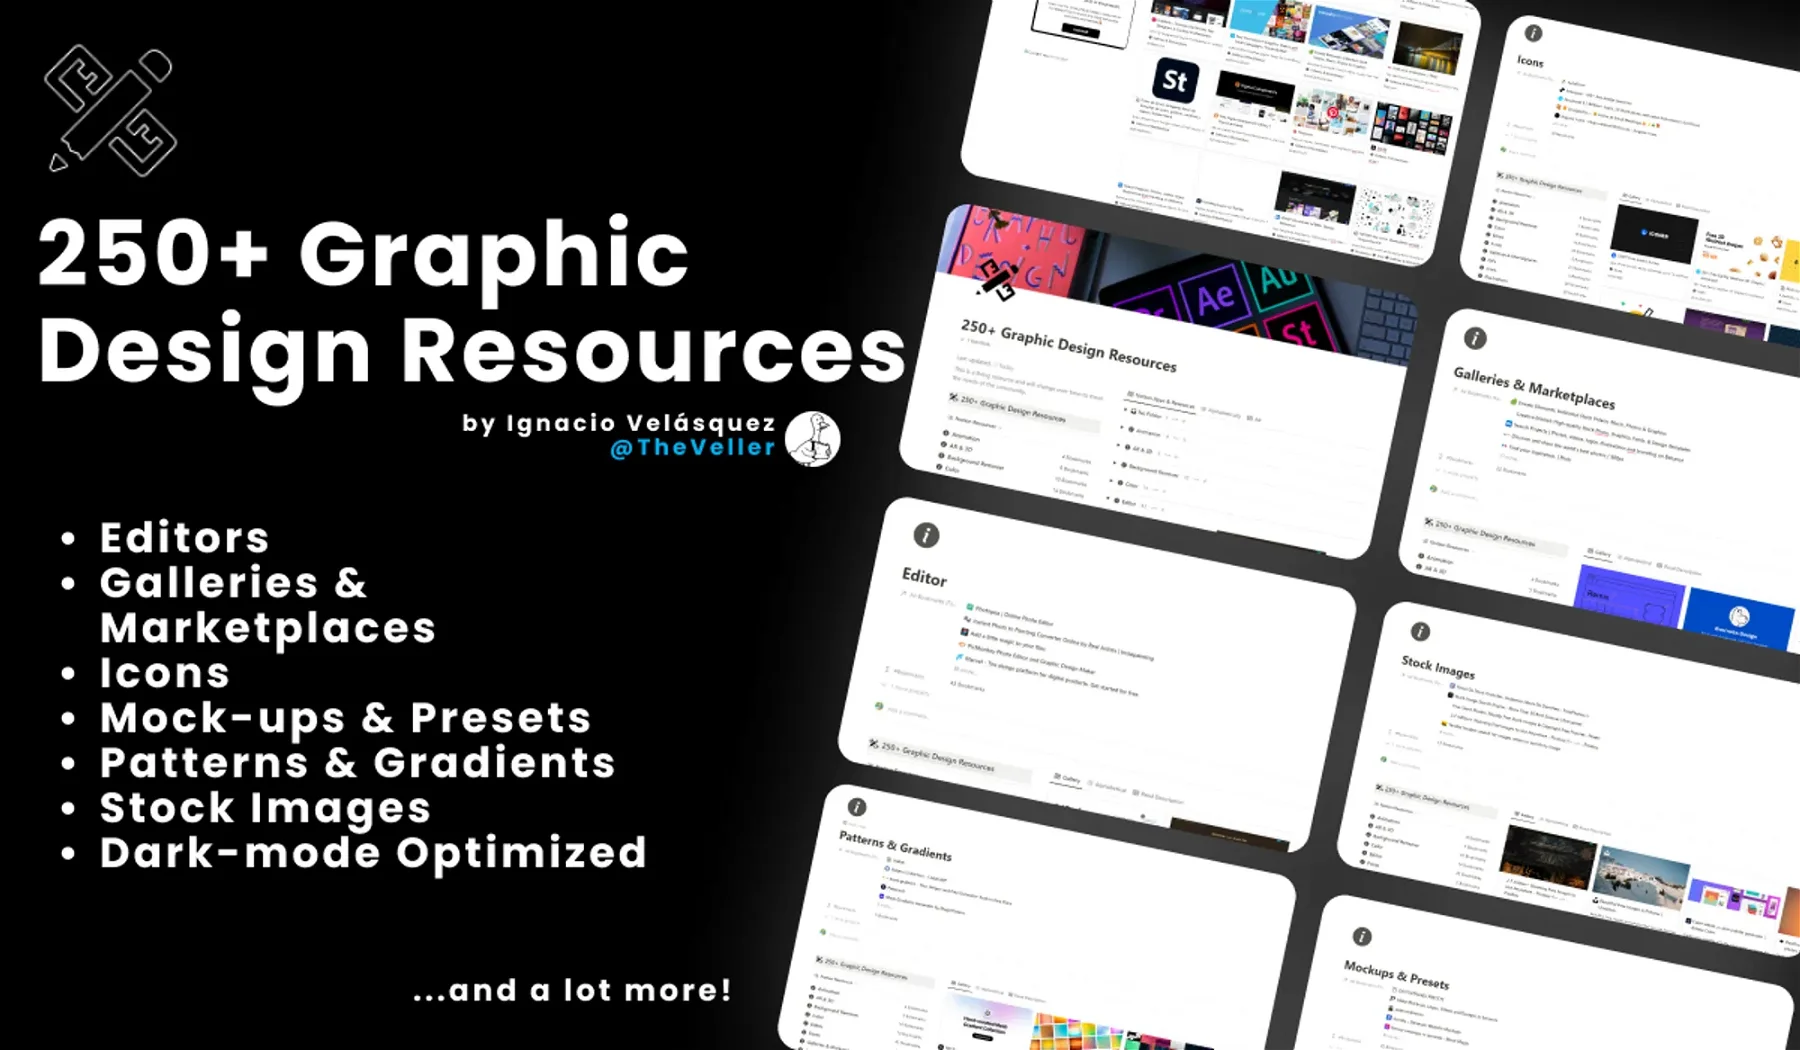 250+ Graphic Design Resources